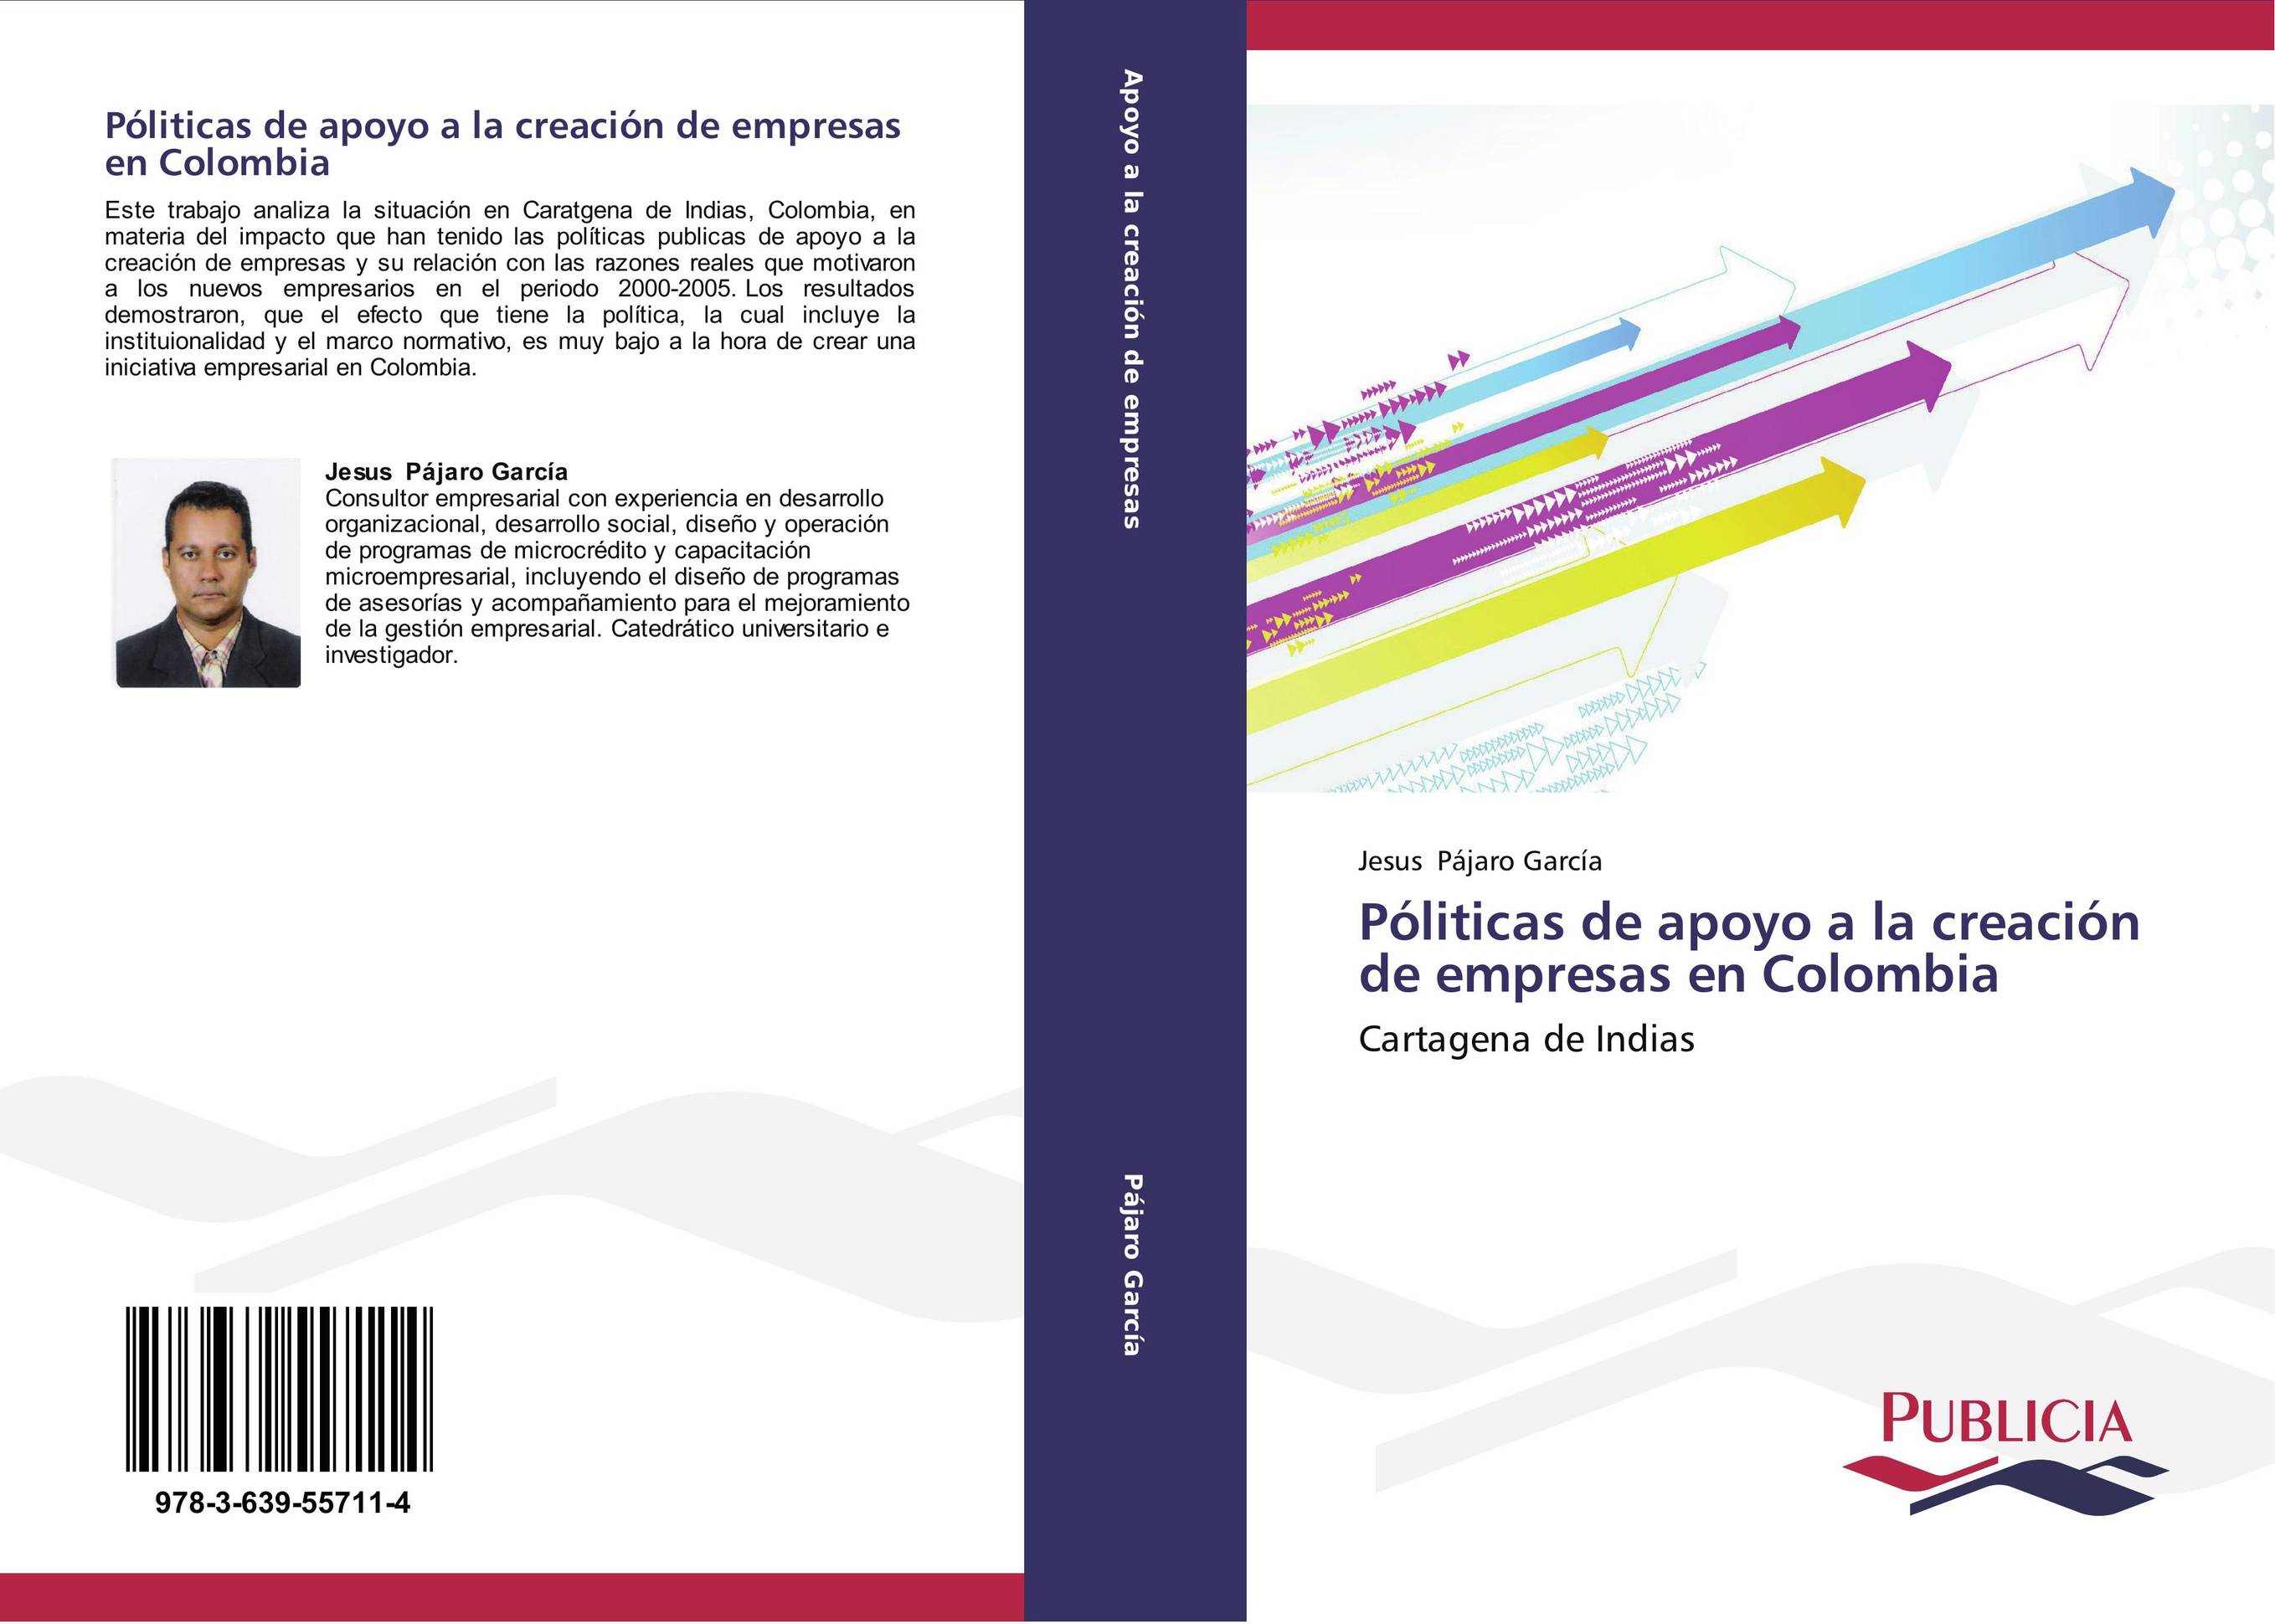 Póliticas de apoyo a la creación de empresas en Colombia